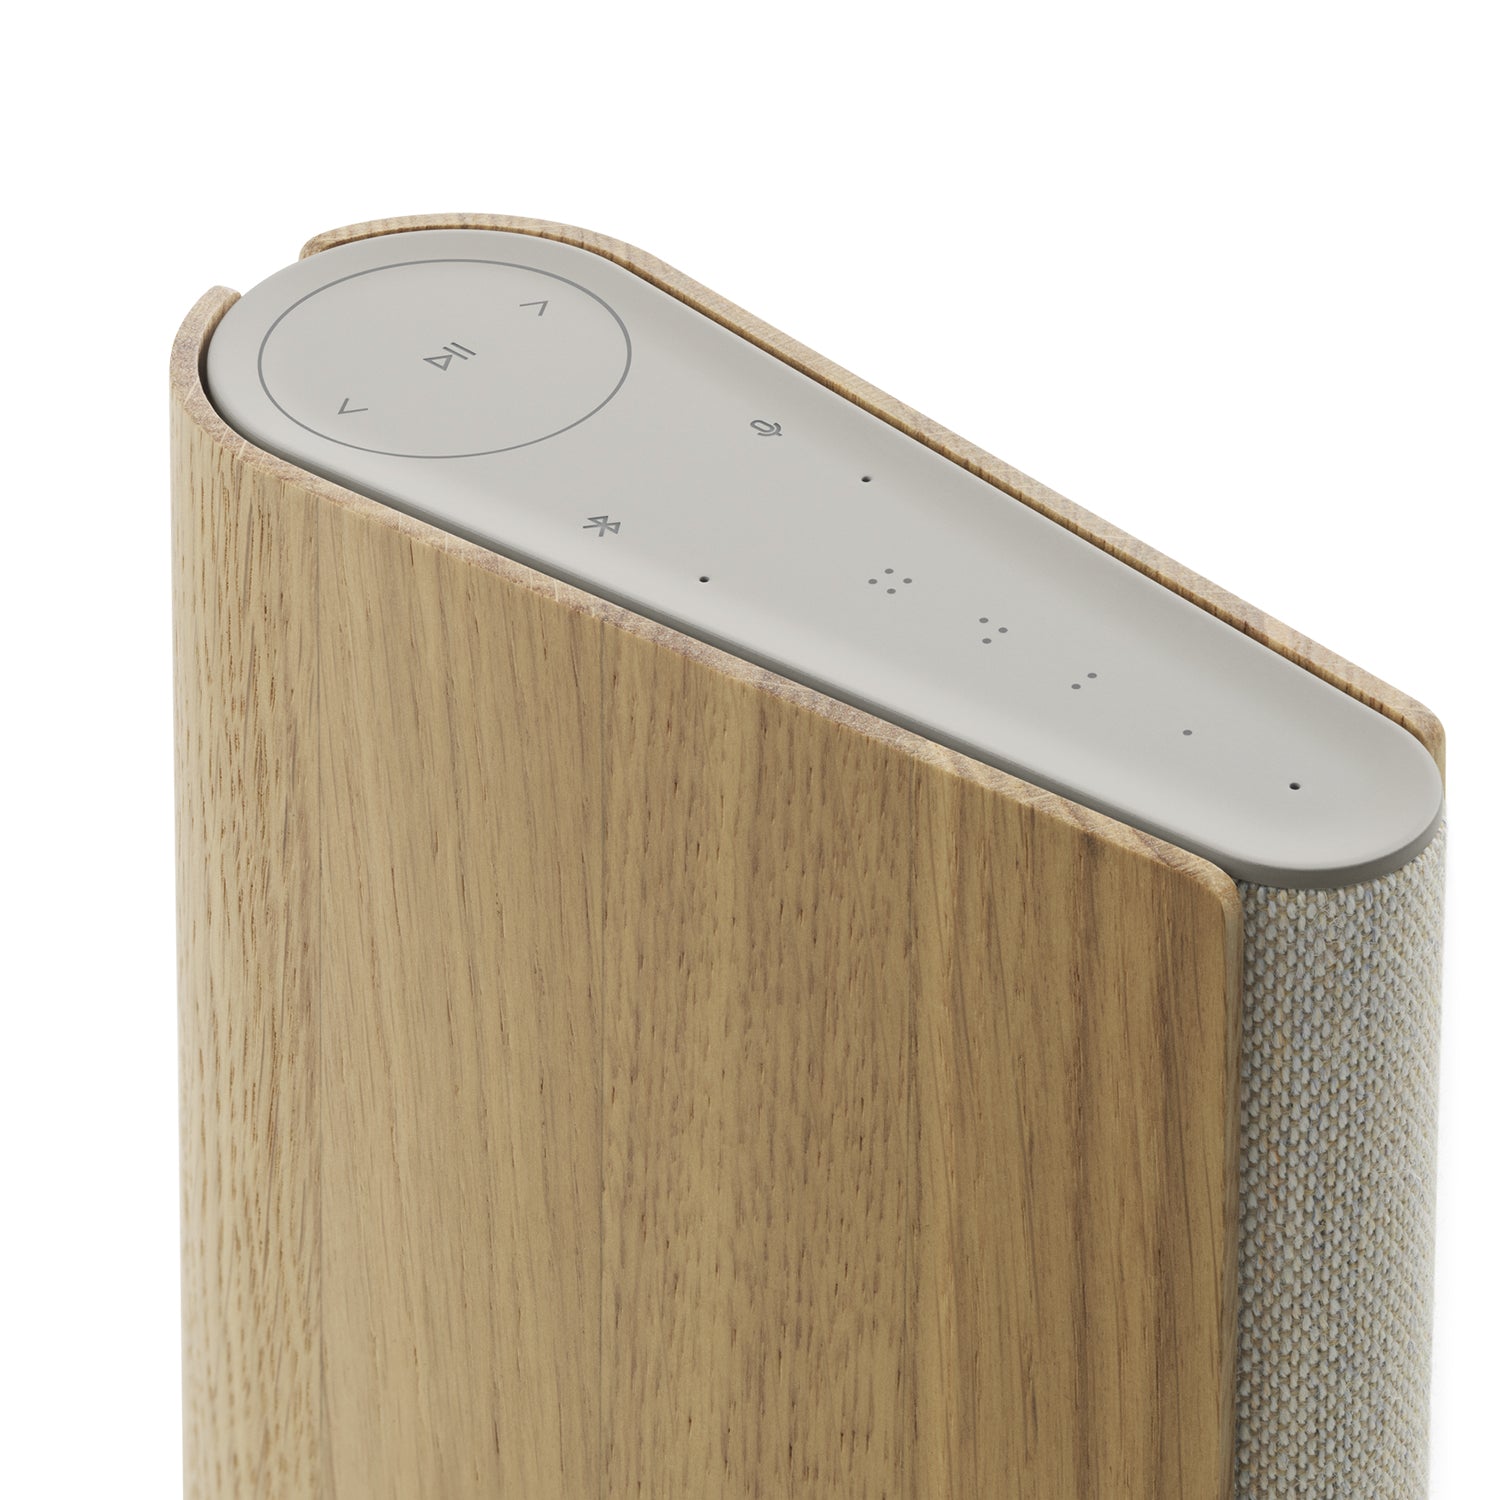 B&O Bang & Olufsen Beosound Emerge Compact WiFi Home Speaker